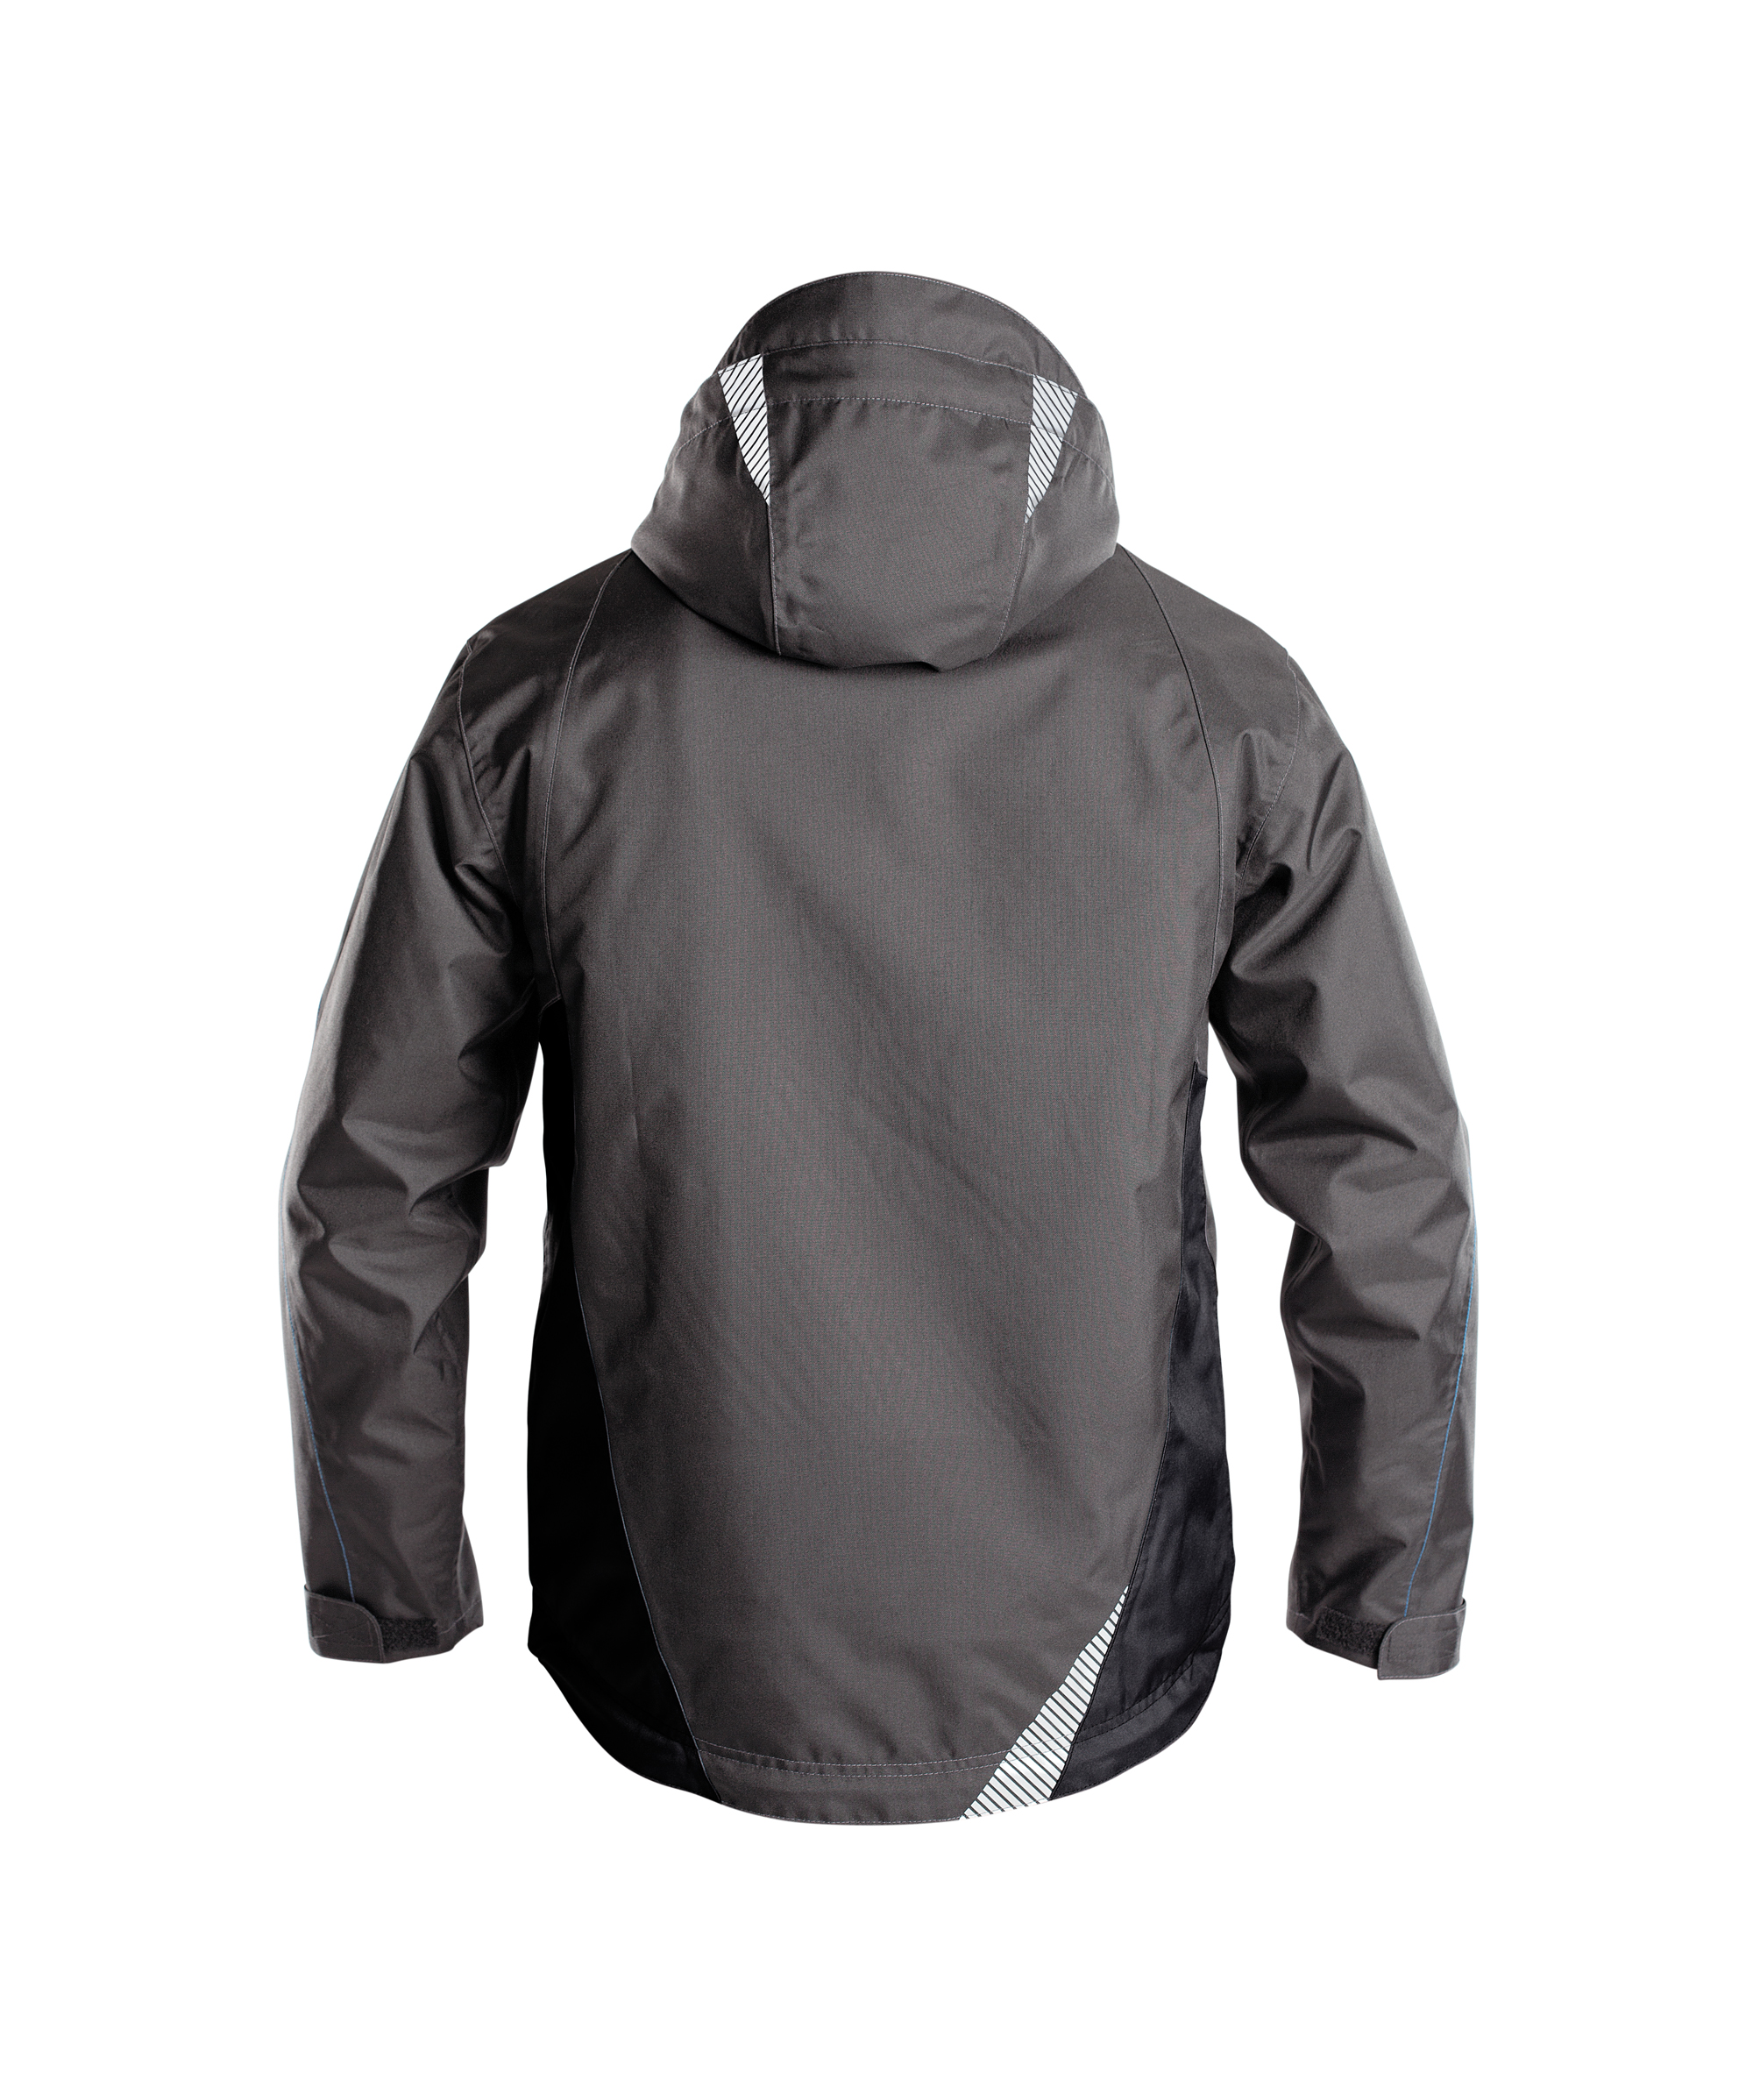 hyper_wind-and-waterproof-work-jacket_anthracite-grey-black_back.jpg